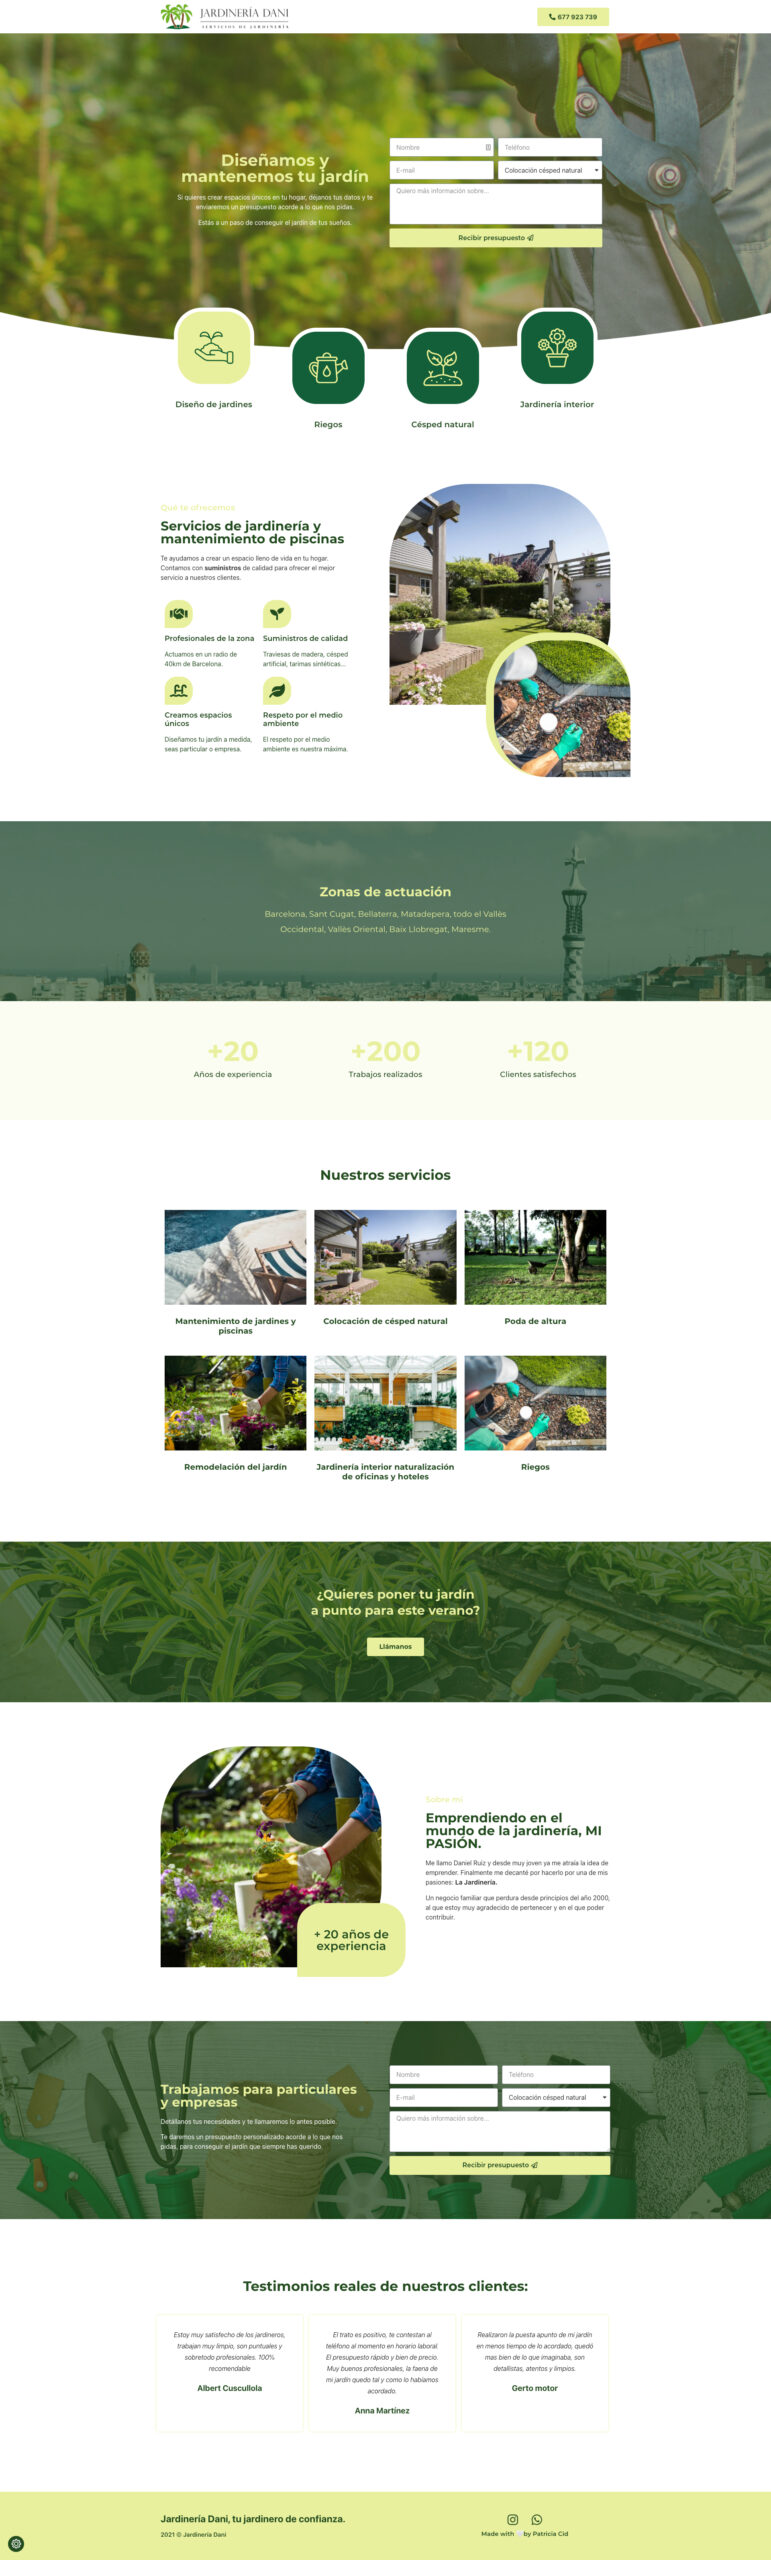 Landing Page para Jardinería Dani